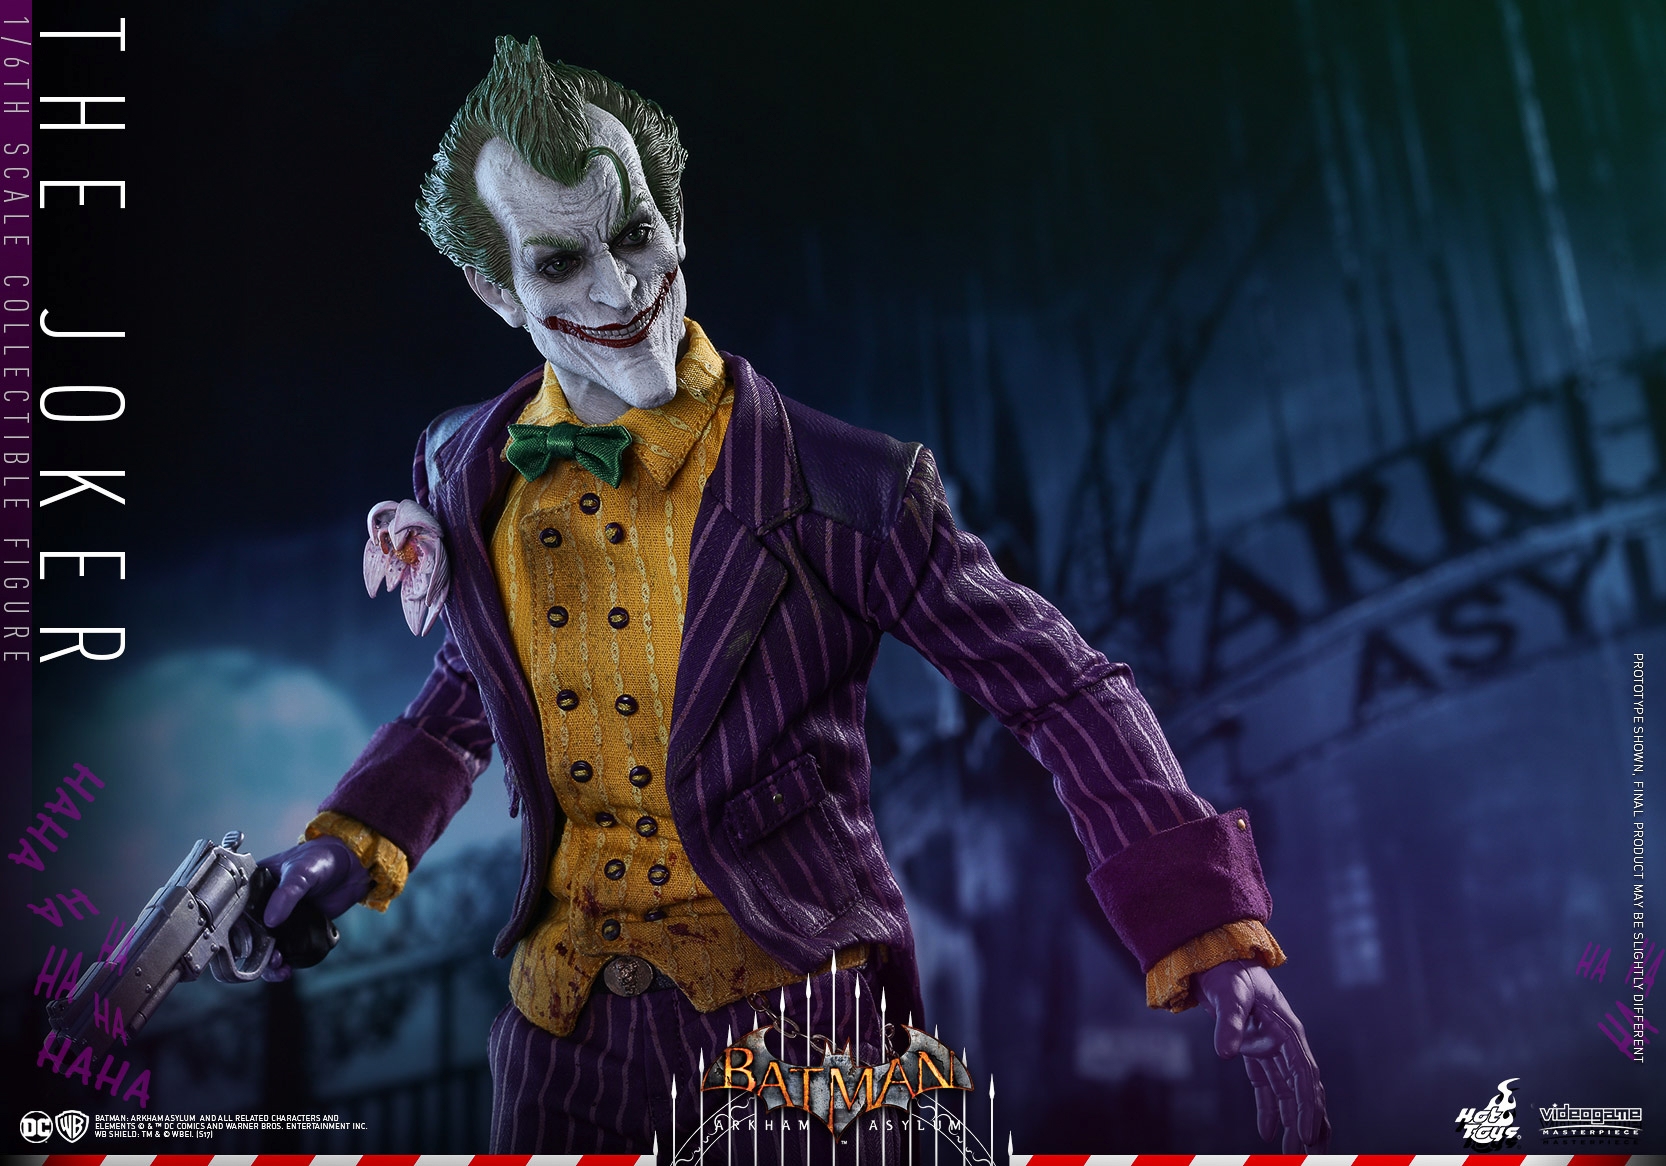 Hot-Toys-Batman-Arkham-Asylum-Joker-Collectible-Figure-014.jpg